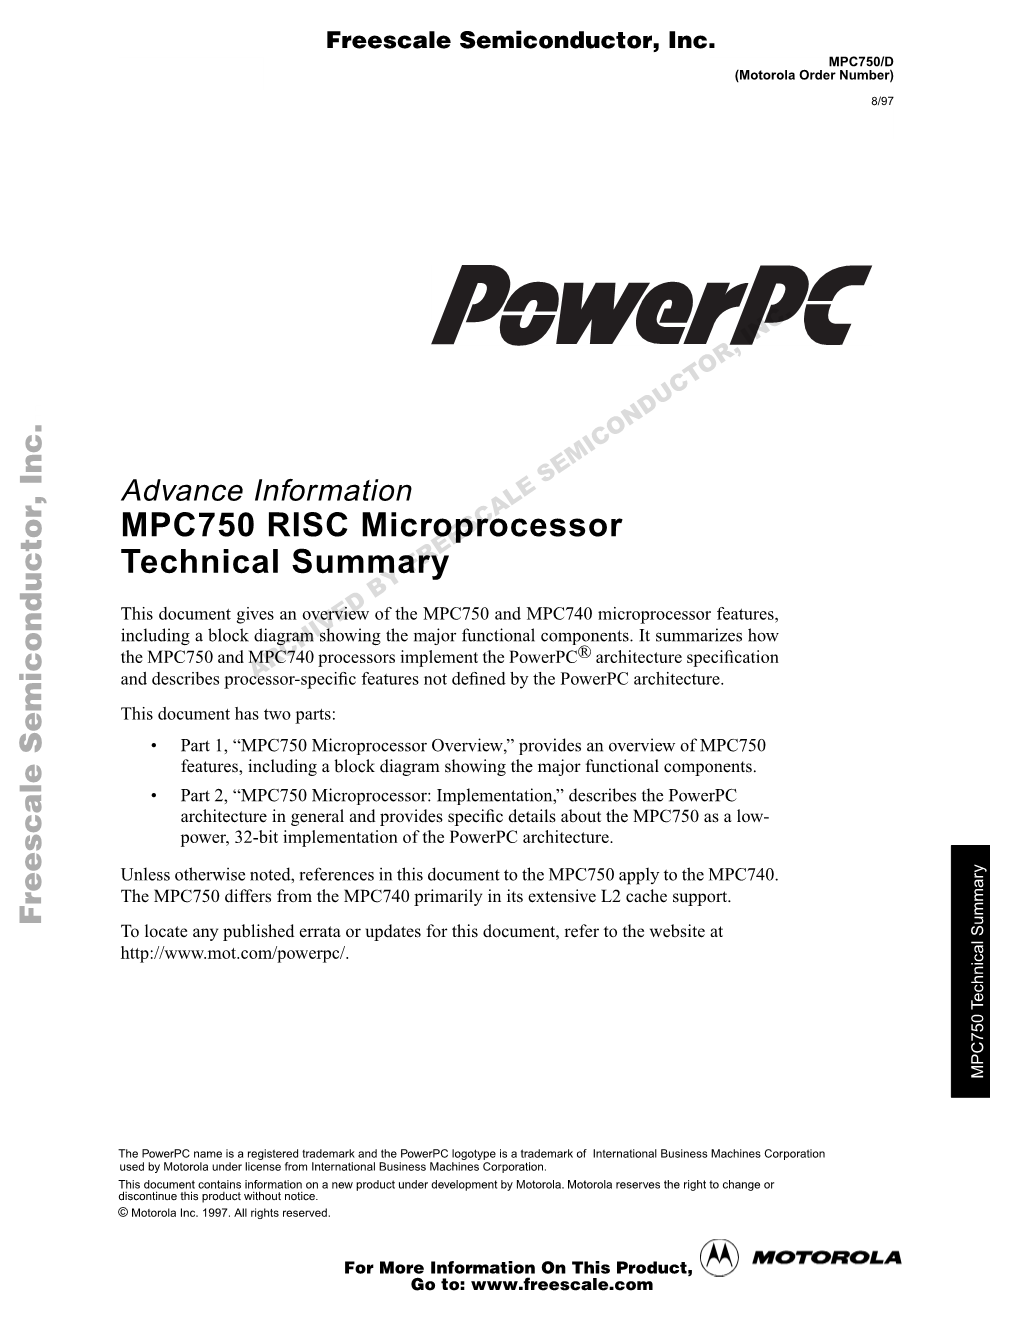 MPC750 RISC Processor by Freescale